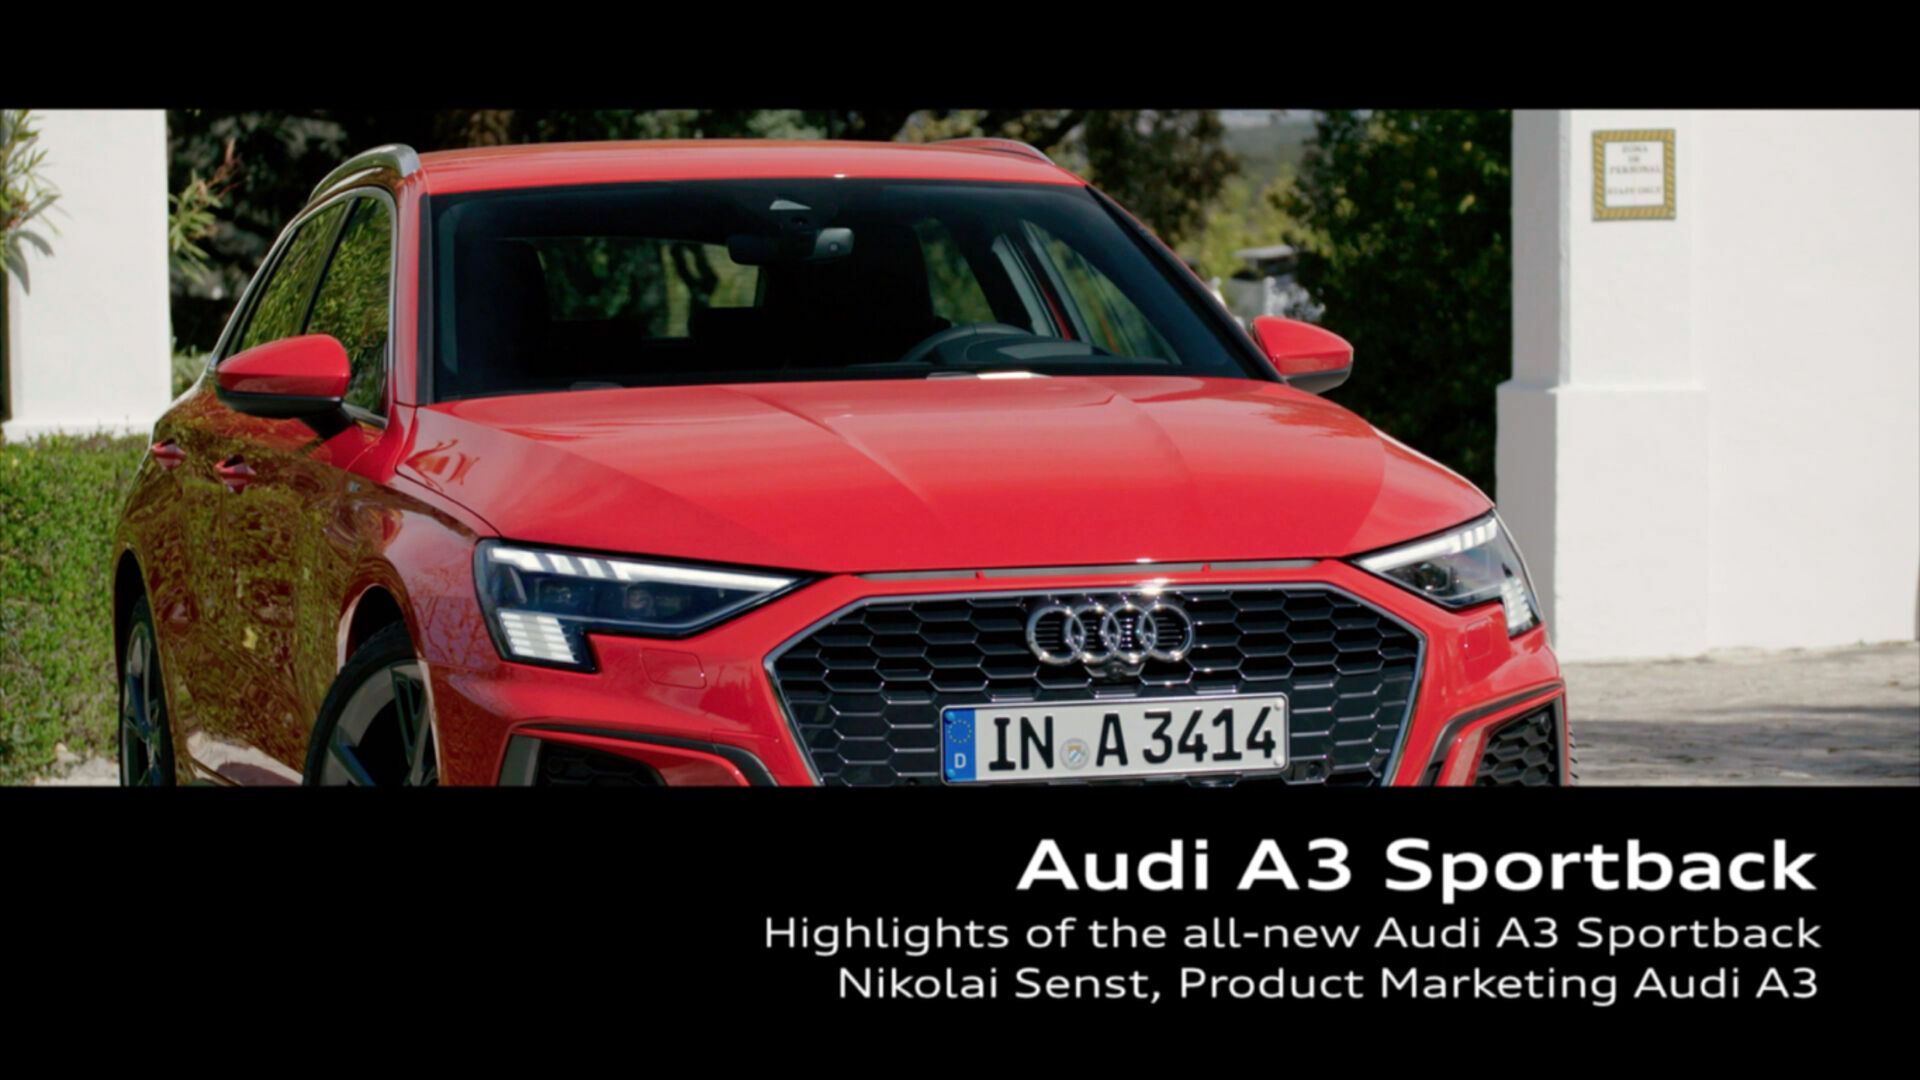 Footage: Audi A3 Sportback – Design